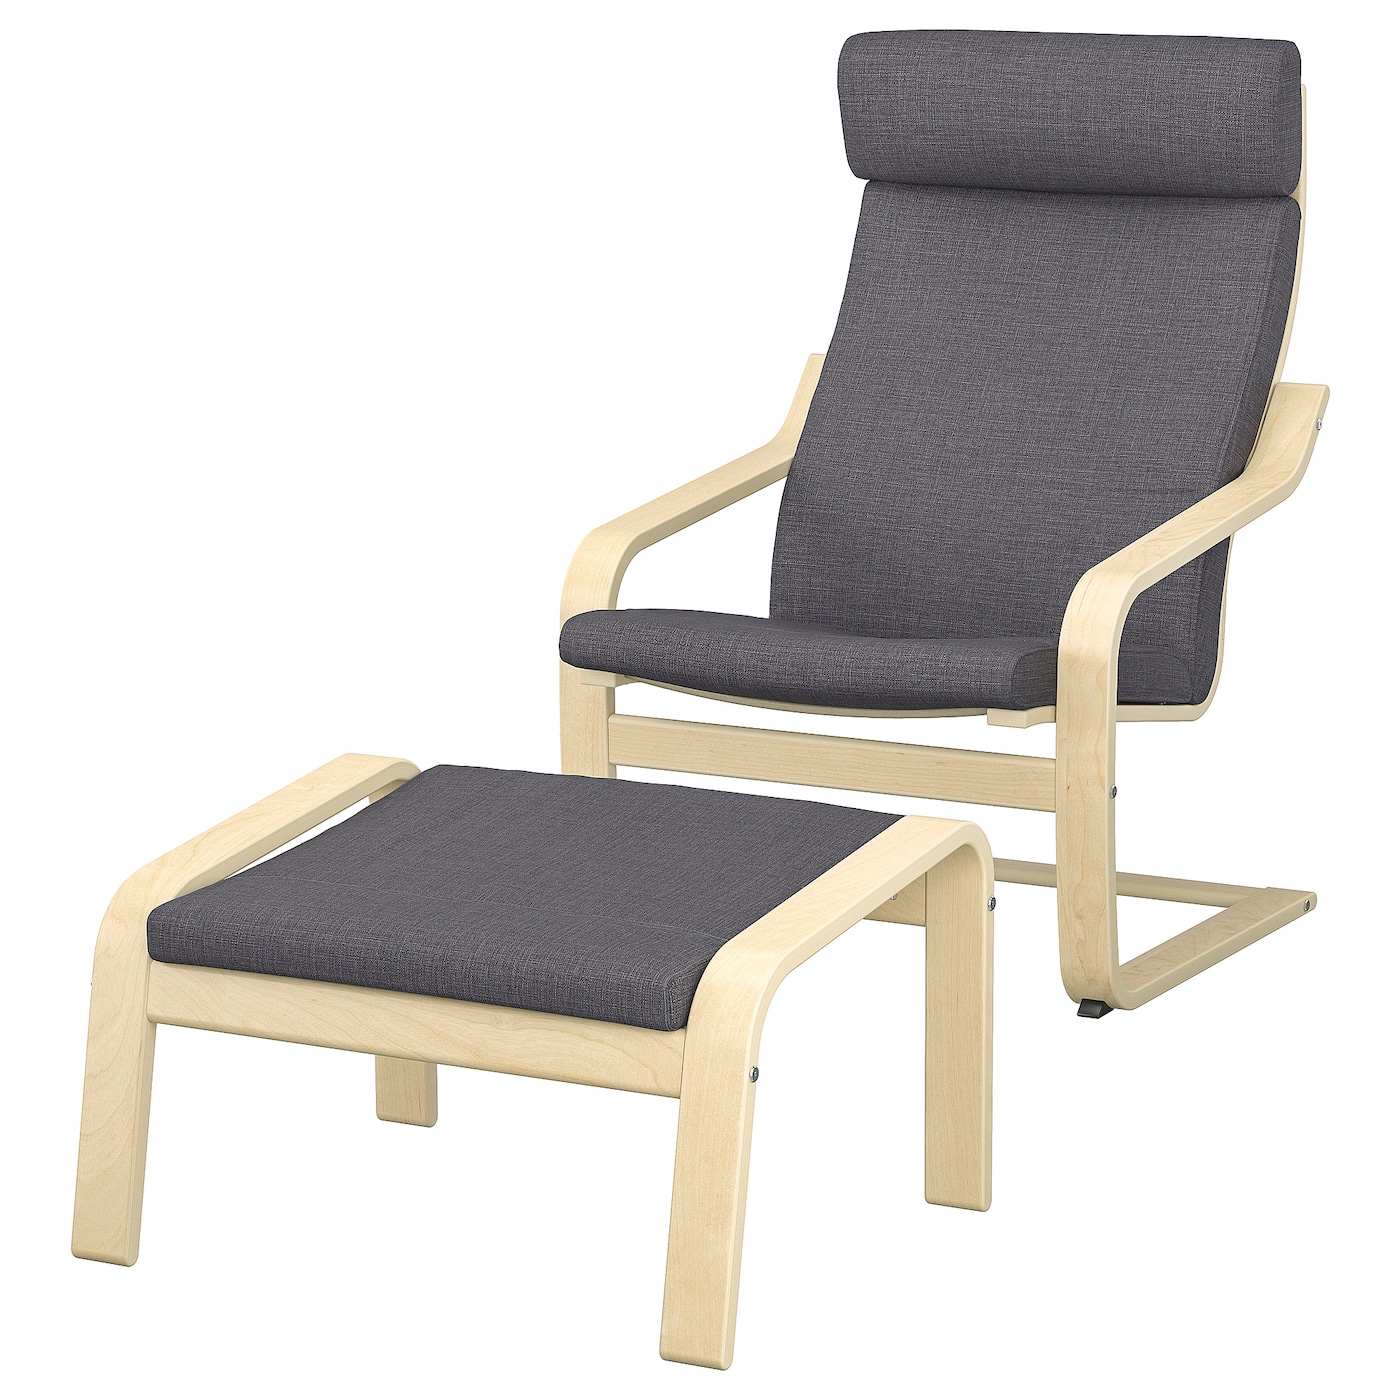 Кресло-качалка и пуф - IKEA POÄNG/POANG, 68x82x100см, бежевый/светло-коричневый, ПОЭНГ ИКЕА